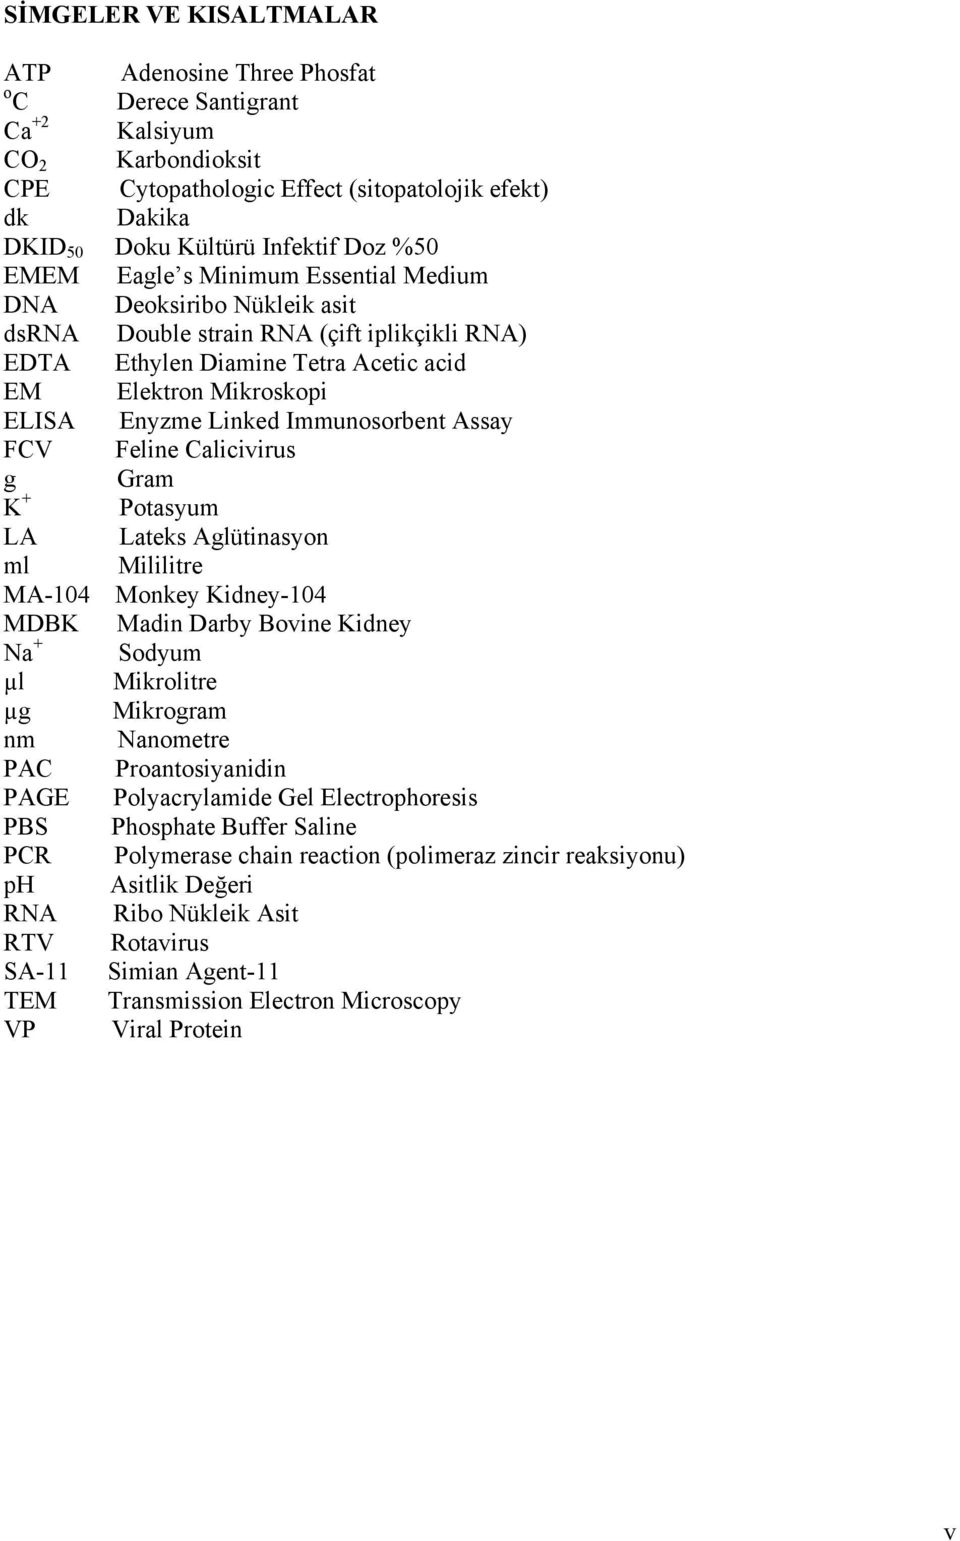 Immunosorbent Assay FCV Feline Calicivirus g Gram K + Potasyum LA Lateks Aglütinasyon ml Mililitre MA-104 Monkey Kidney-104 MDBK Madin Darby Bovine Kidney Na + Sodyum µl Mikrolitre µg Mikrogram nm